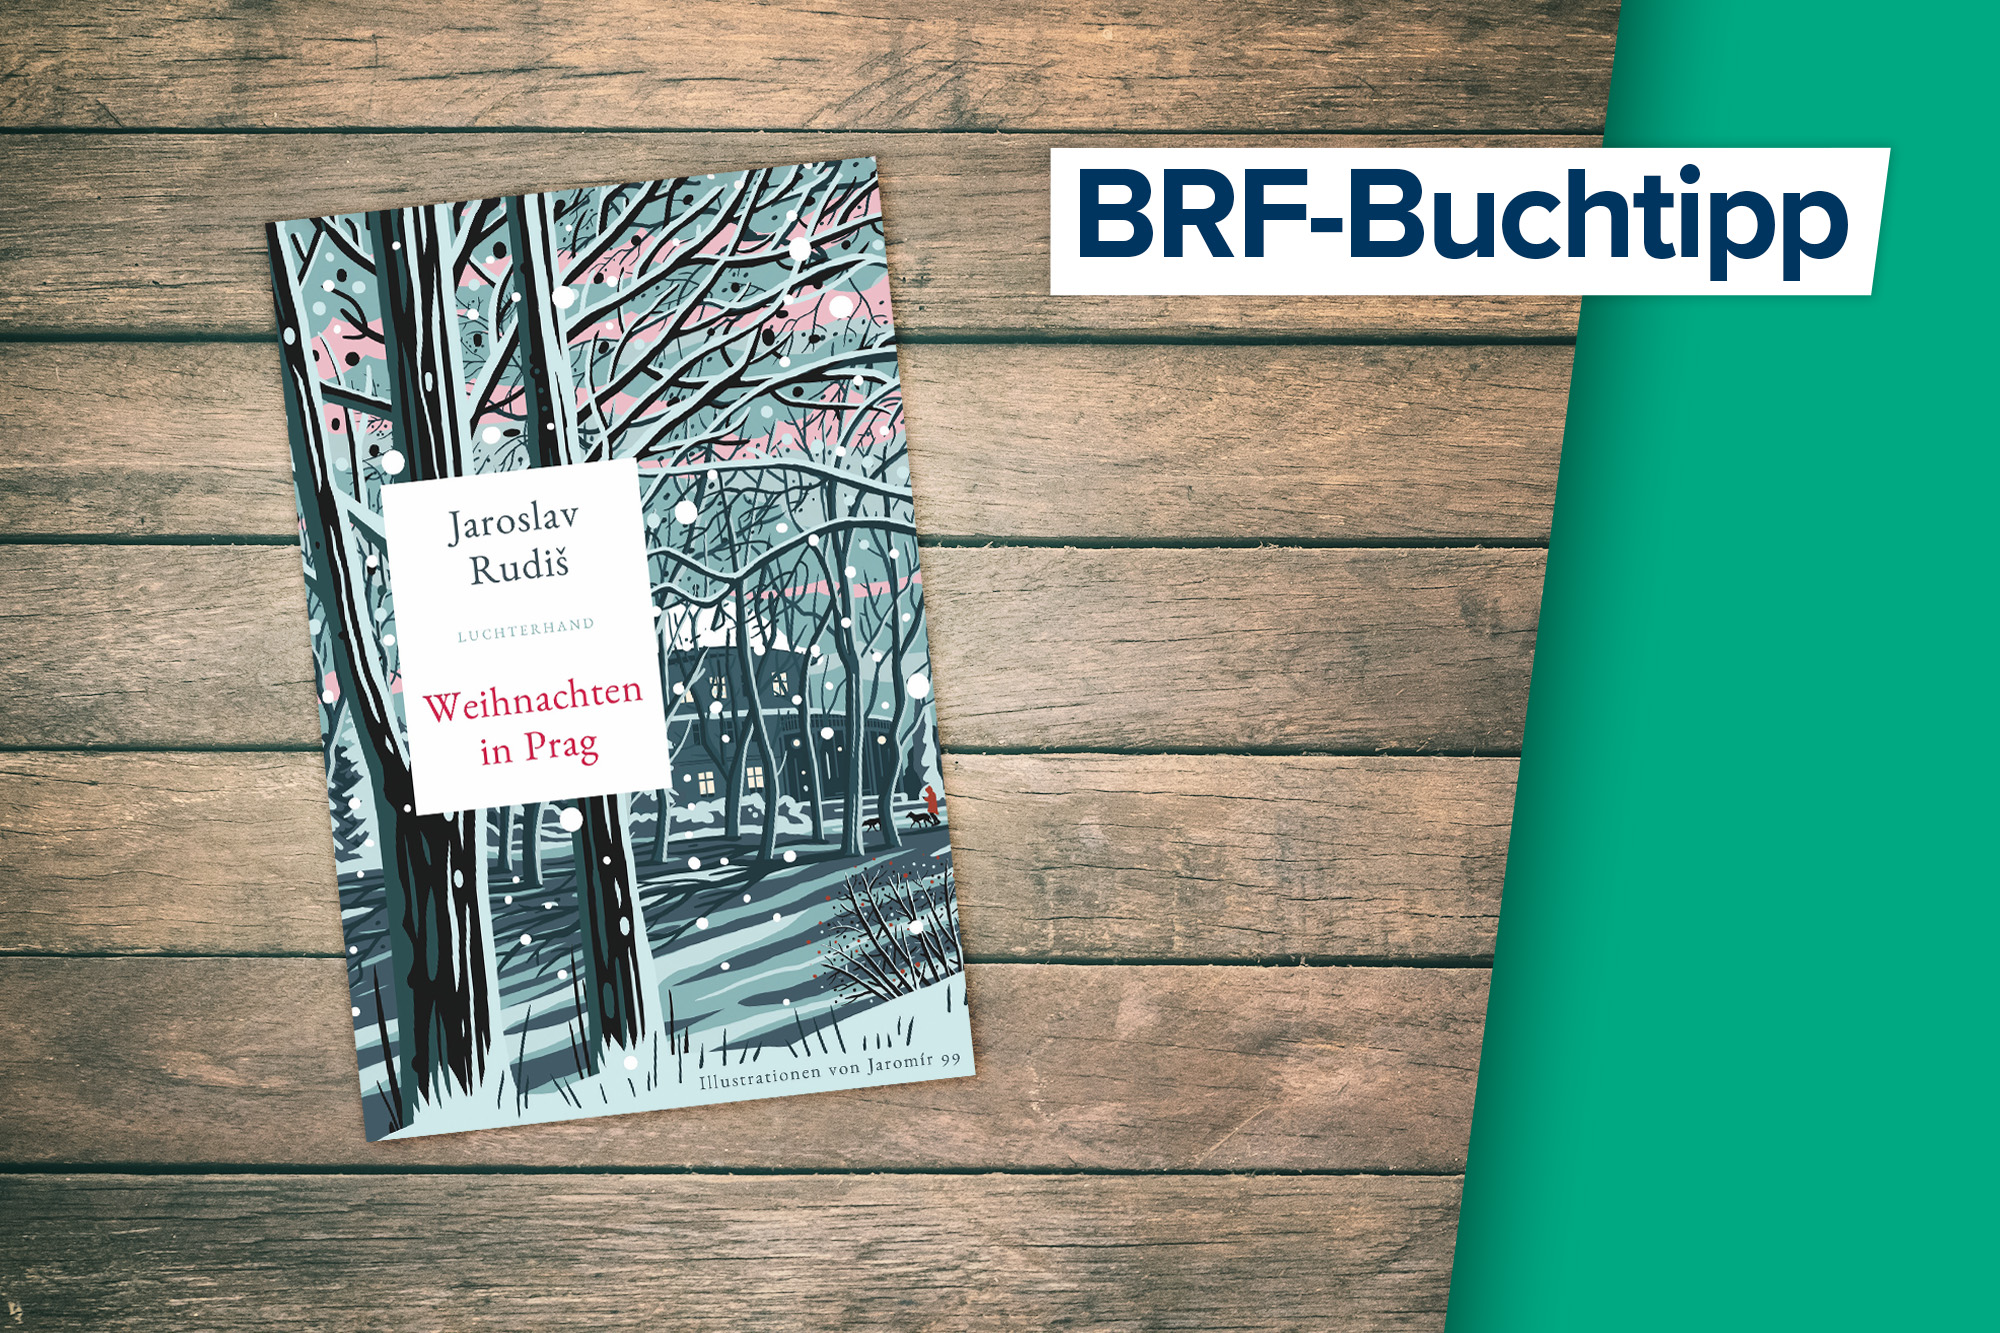 Der Buchtipp auf BRF1: "Weihnachten in Prag" von Jaroslav Rudis (Luchterhand Verlag)